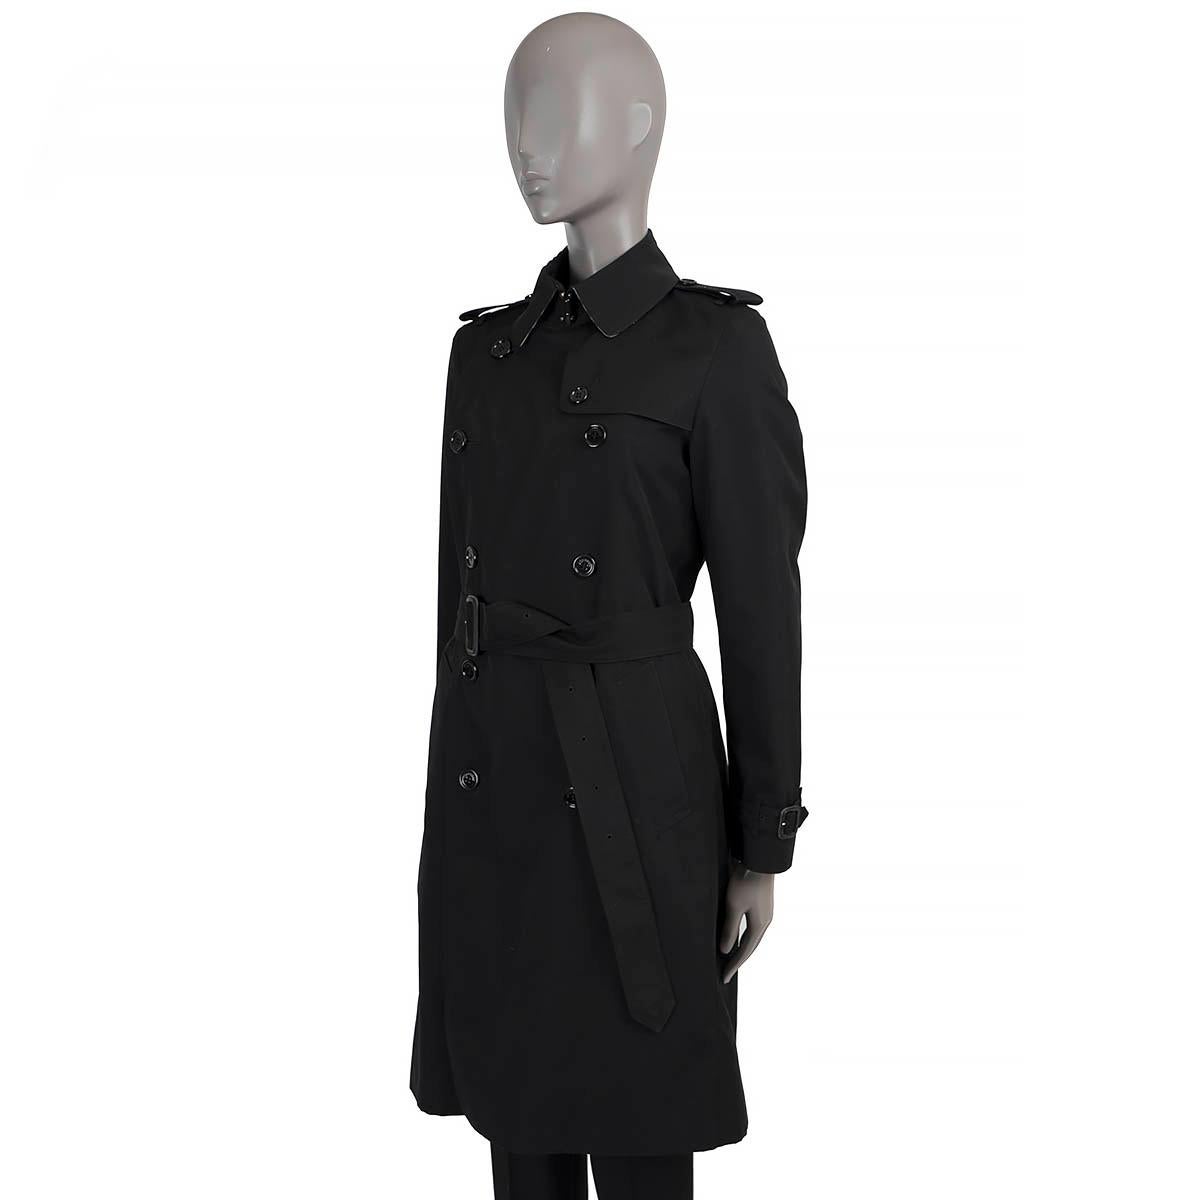 Trench-coat Waterloo de Burberry London en polyerster-coton noir 100% authentique (l'étiquette de contenu n'est plus lisible). Doté d'épaulettes, d'un rabat-tempête, de poignets ceinturés et de deux poches en biais à la taille. Fermeture à double